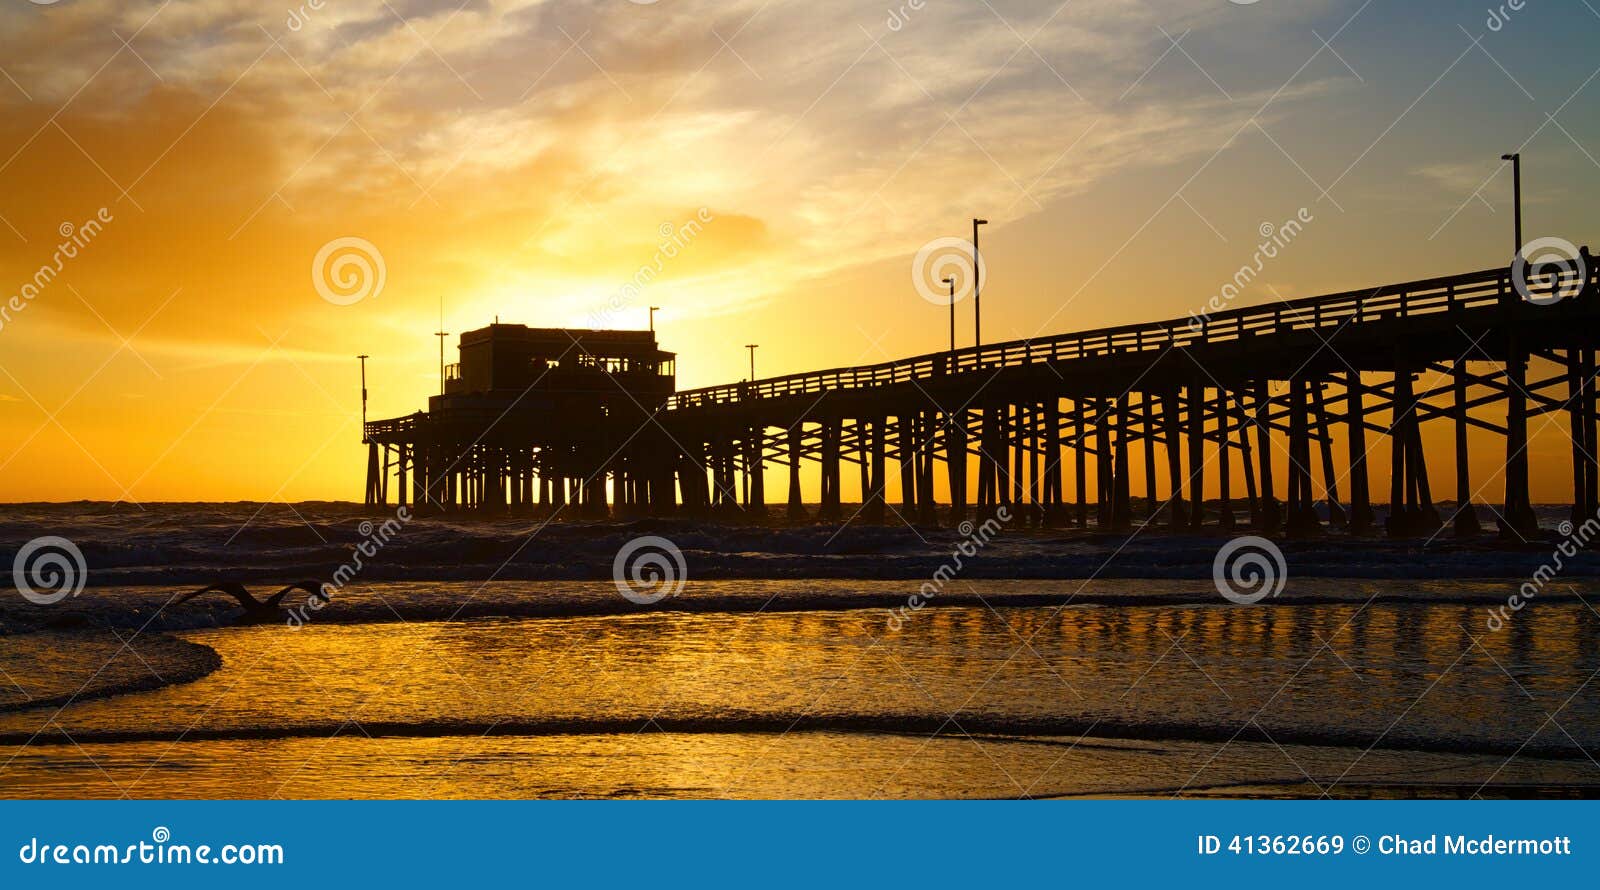 newport beach california pier at sunset